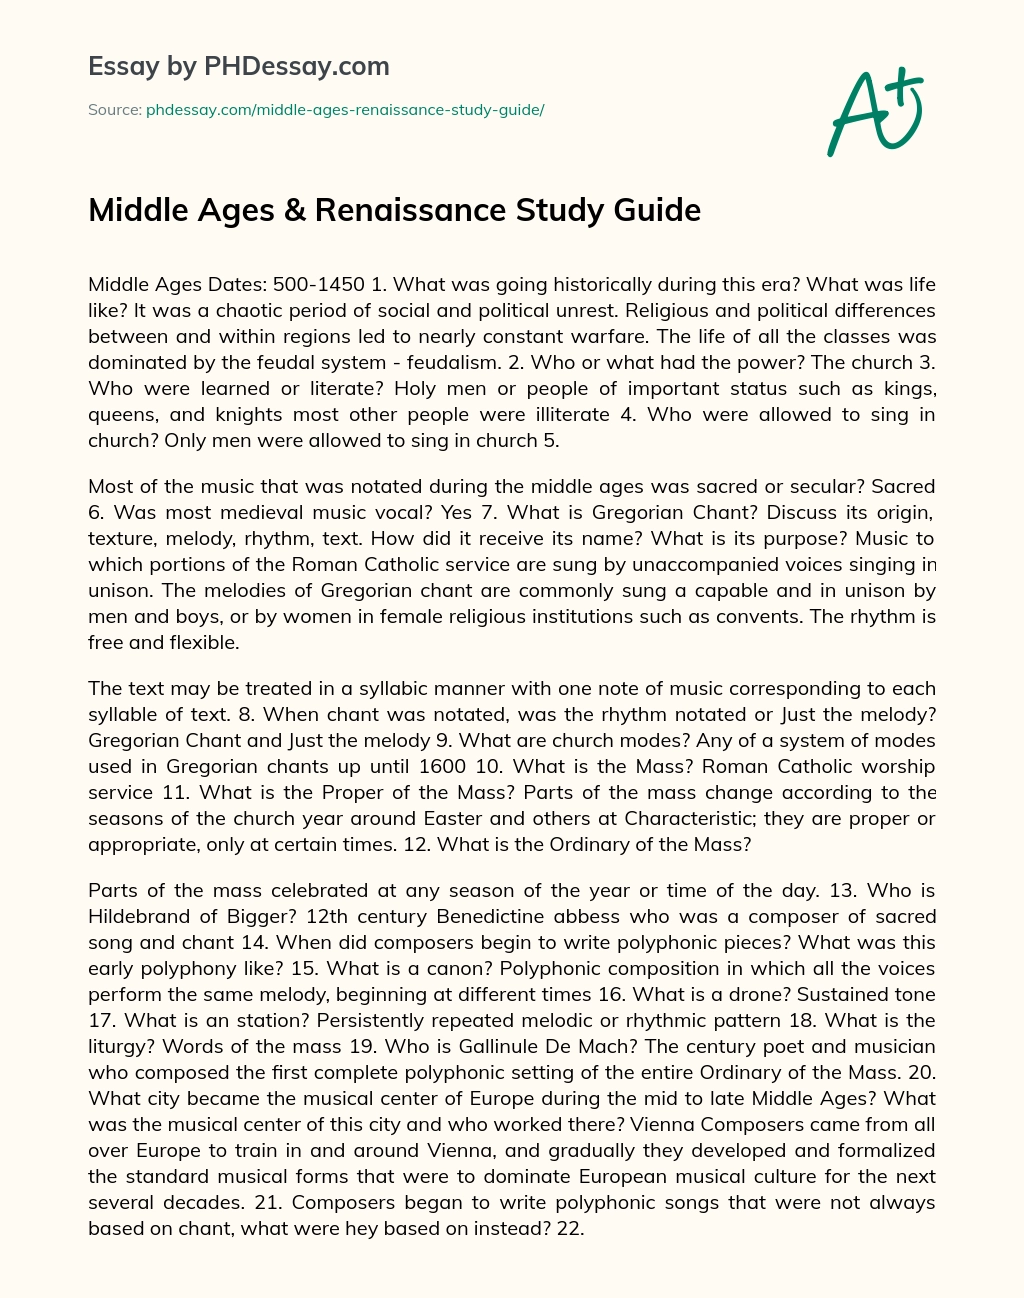 Middle Ages & Renaissance Study Guide essay